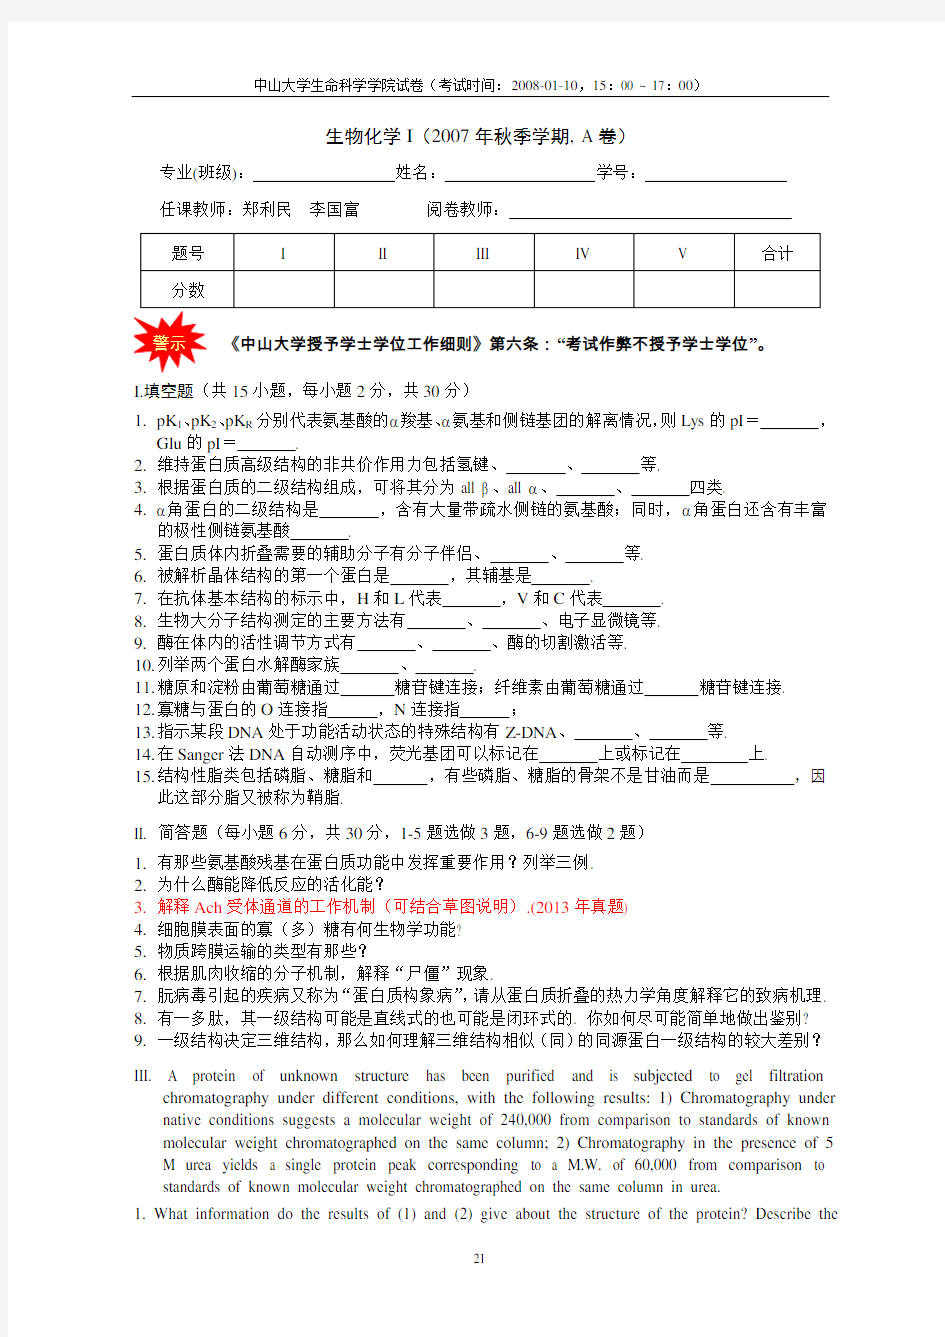 中山大学生化上考试往年试题完整版2008